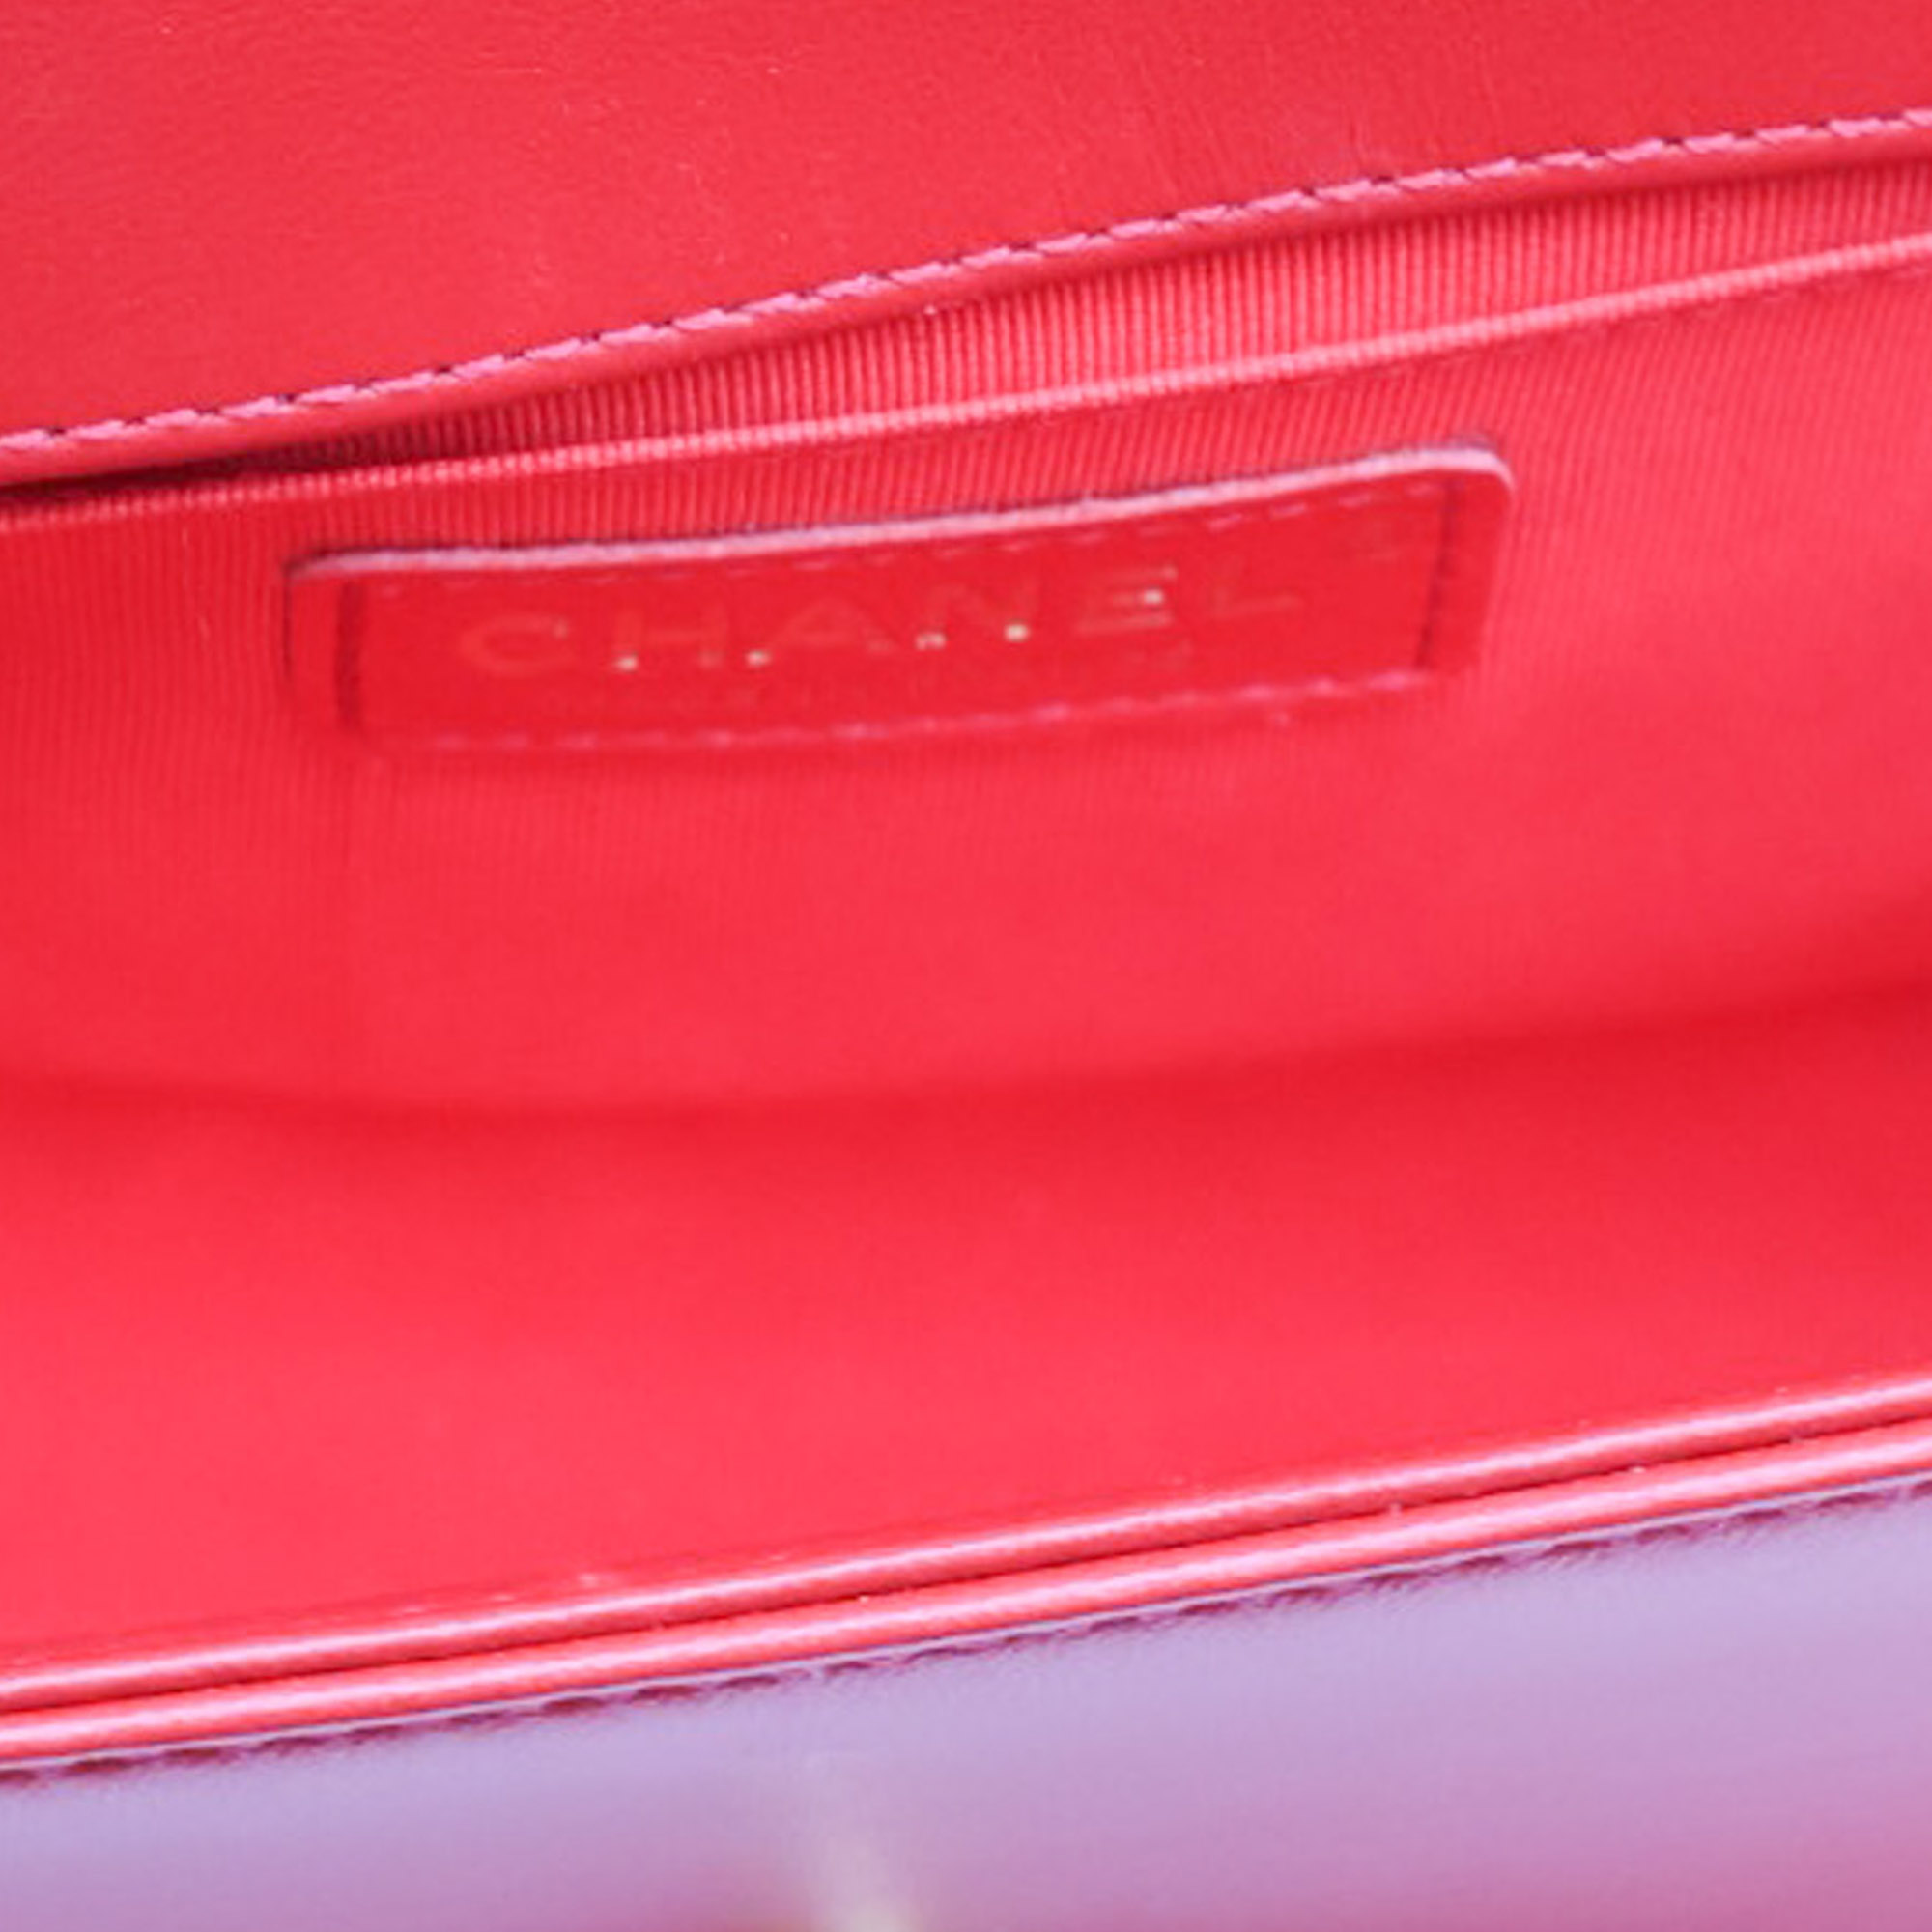 Chanel Red Medium Boy Flap Bag